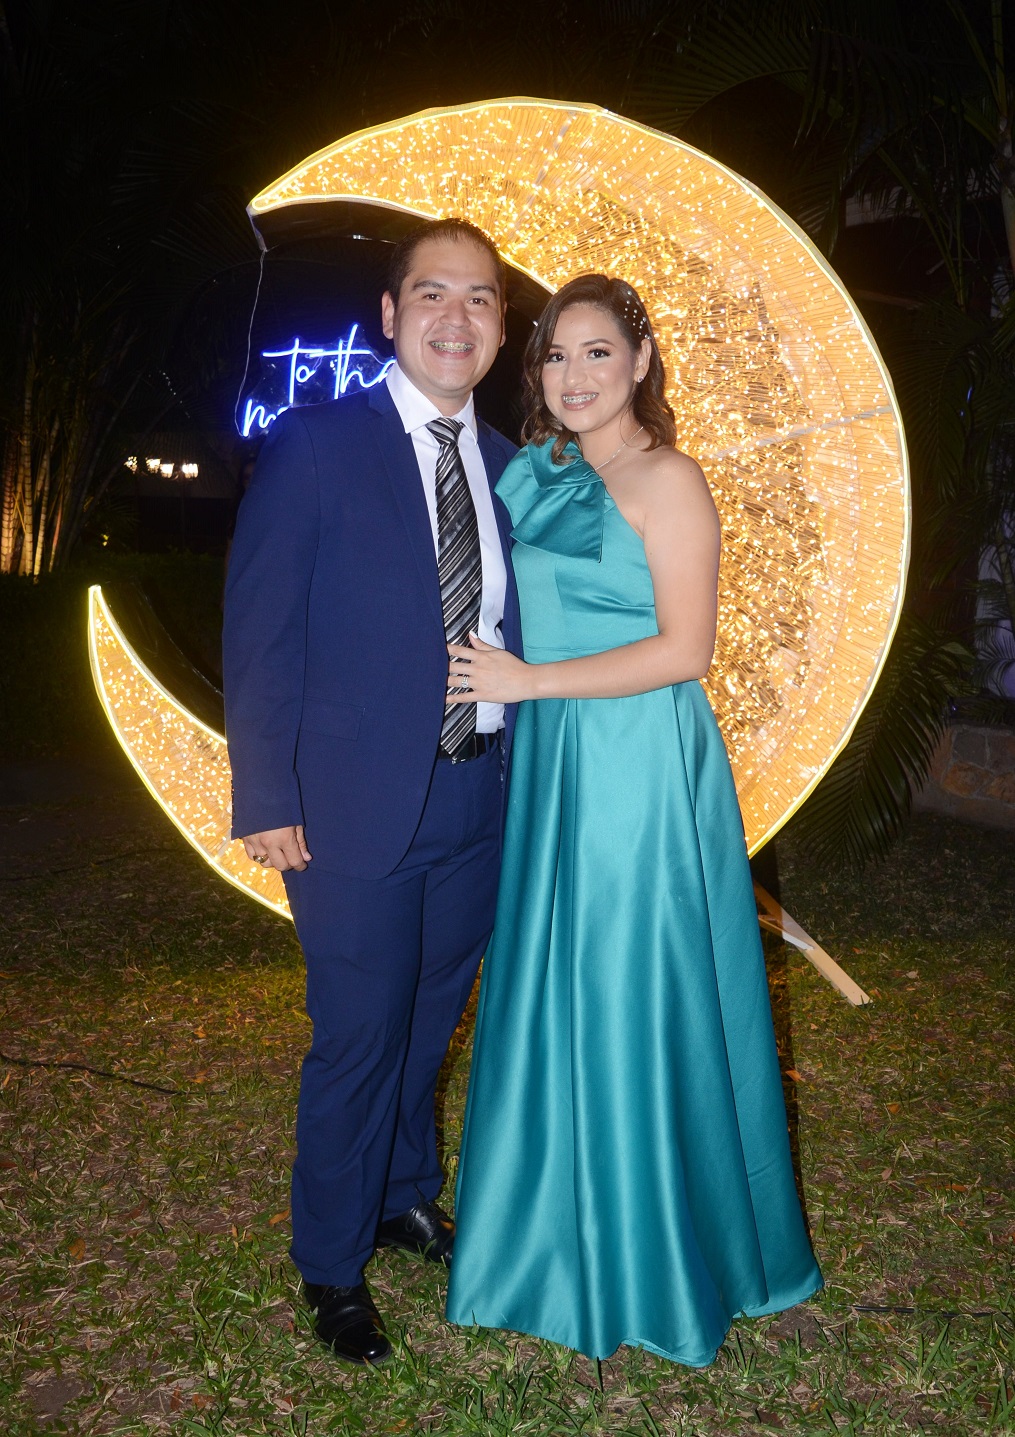 Bajo la luna y las estrellas se dan el “Sí acepto” Melanie Casanova y Daniel Vallecillo